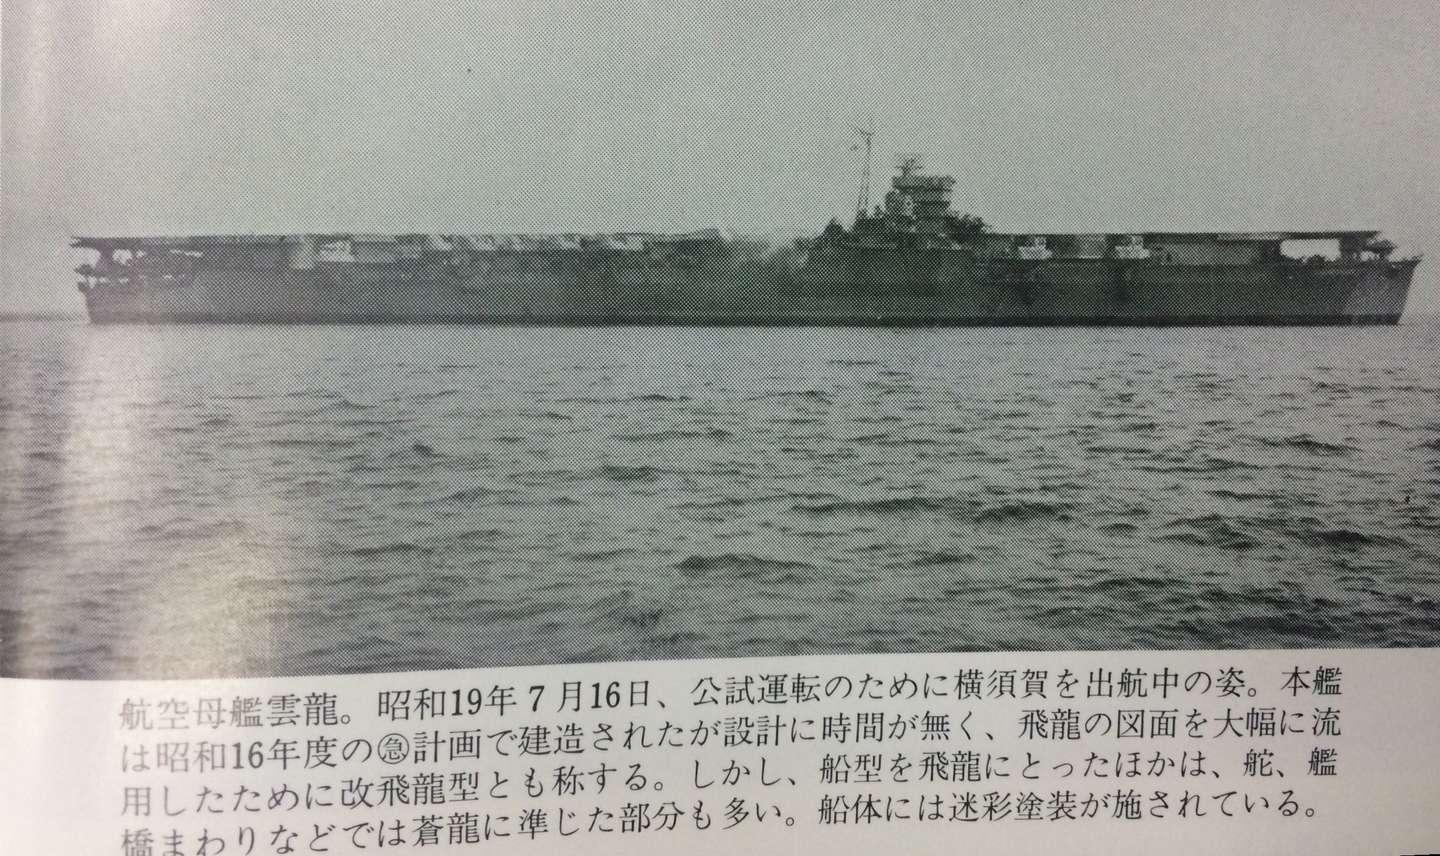 日本空母物语 第一章日本的空母 舰船建造技术的秘密 一 知乎